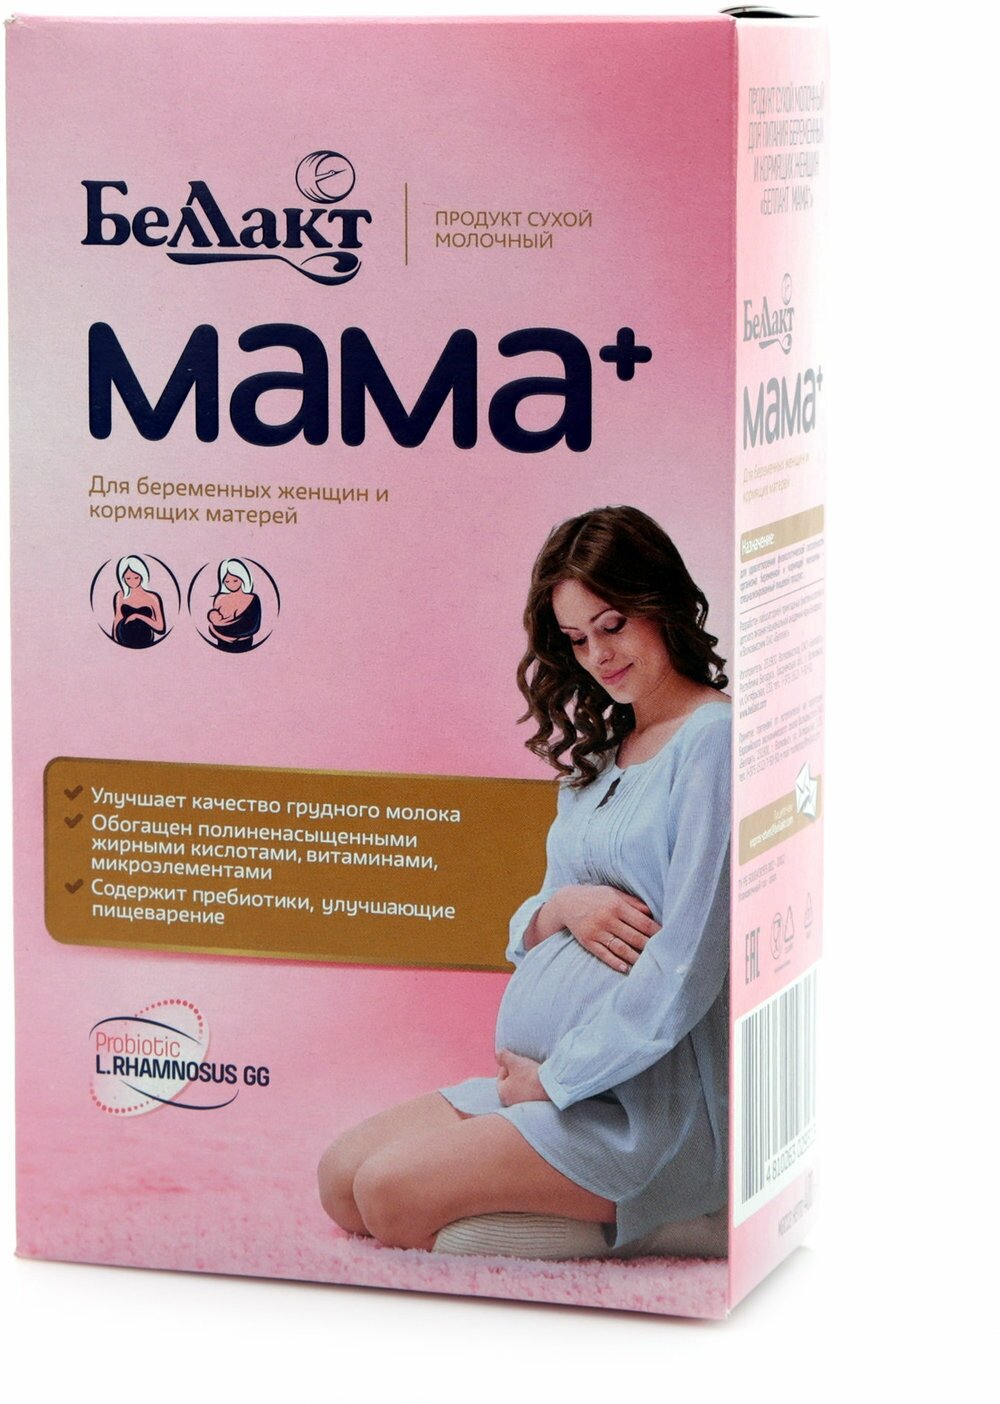 Сухой молочный продукт "Беллакт" Мама+, 400гр - фото №8